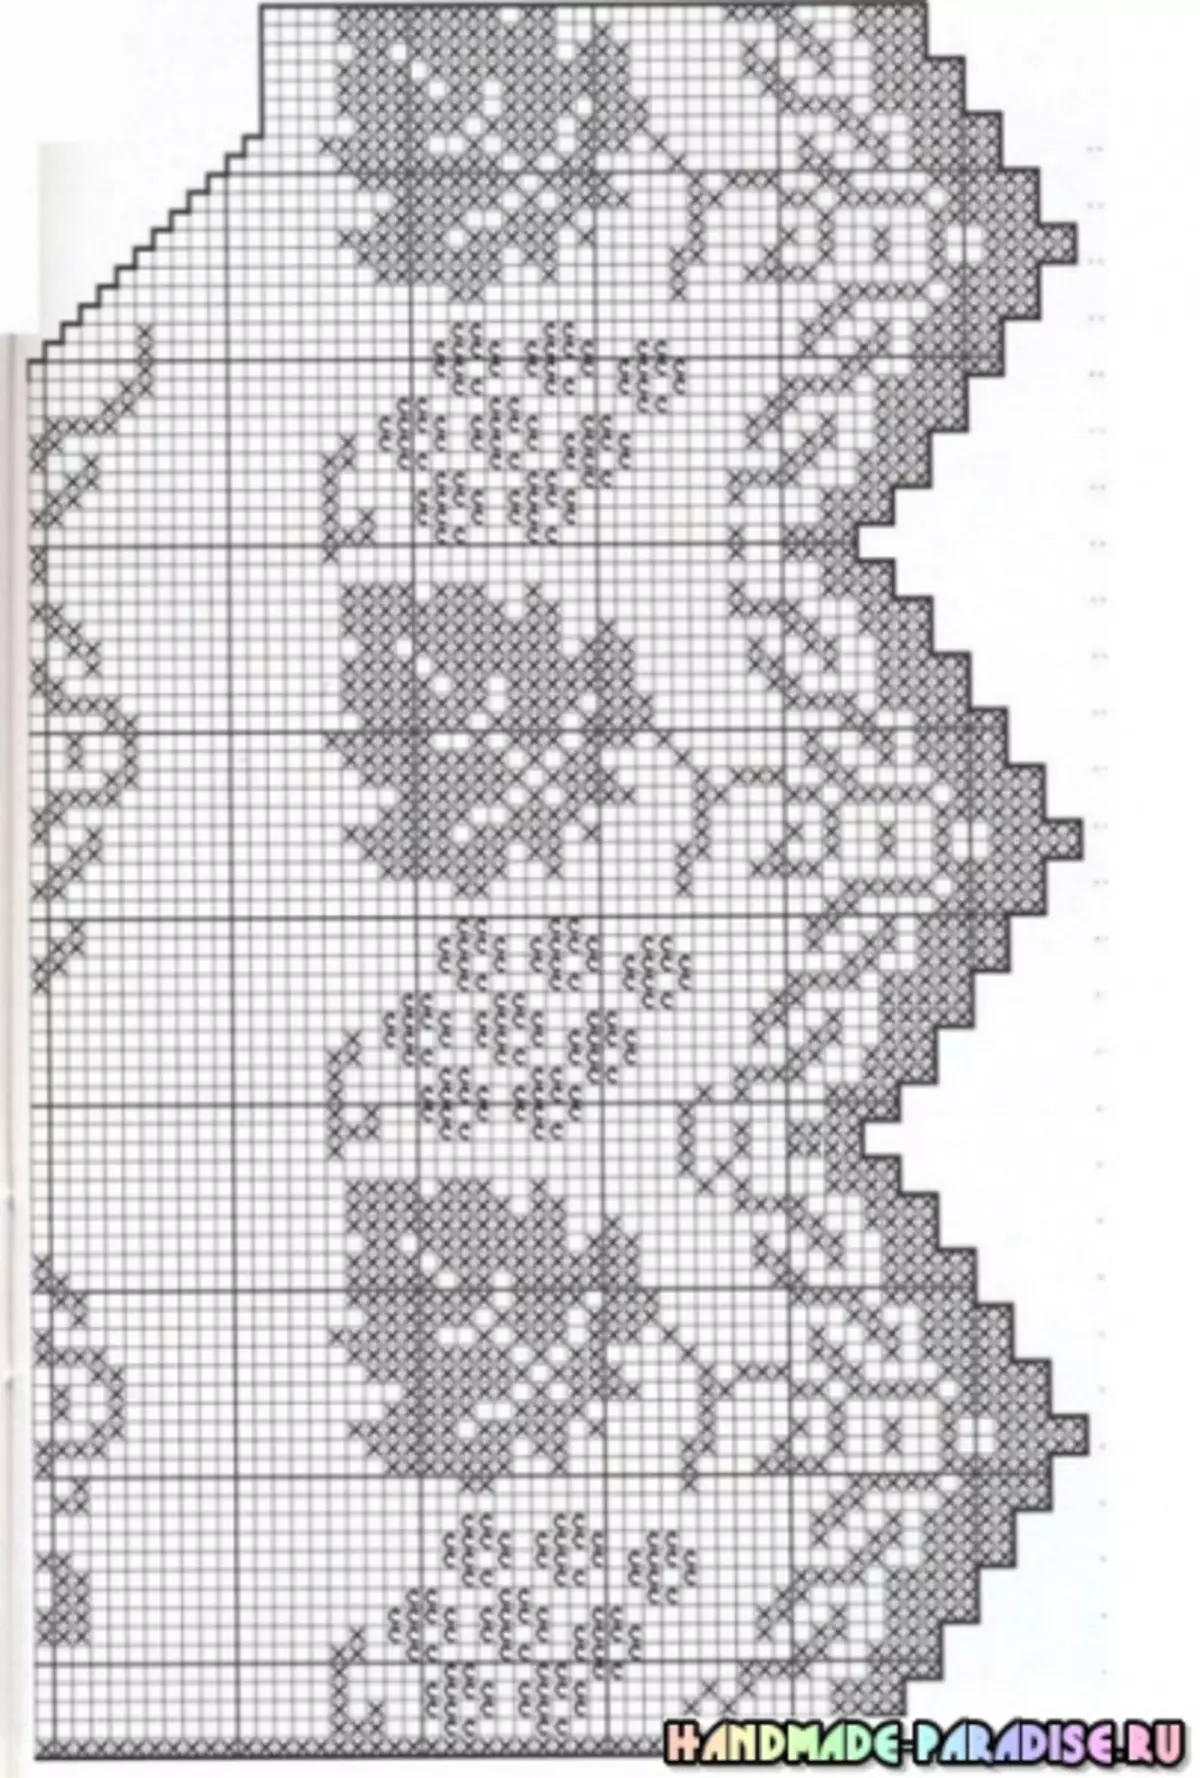 Tafelkleeder, Servietten a Këssen - Crochet Circuit